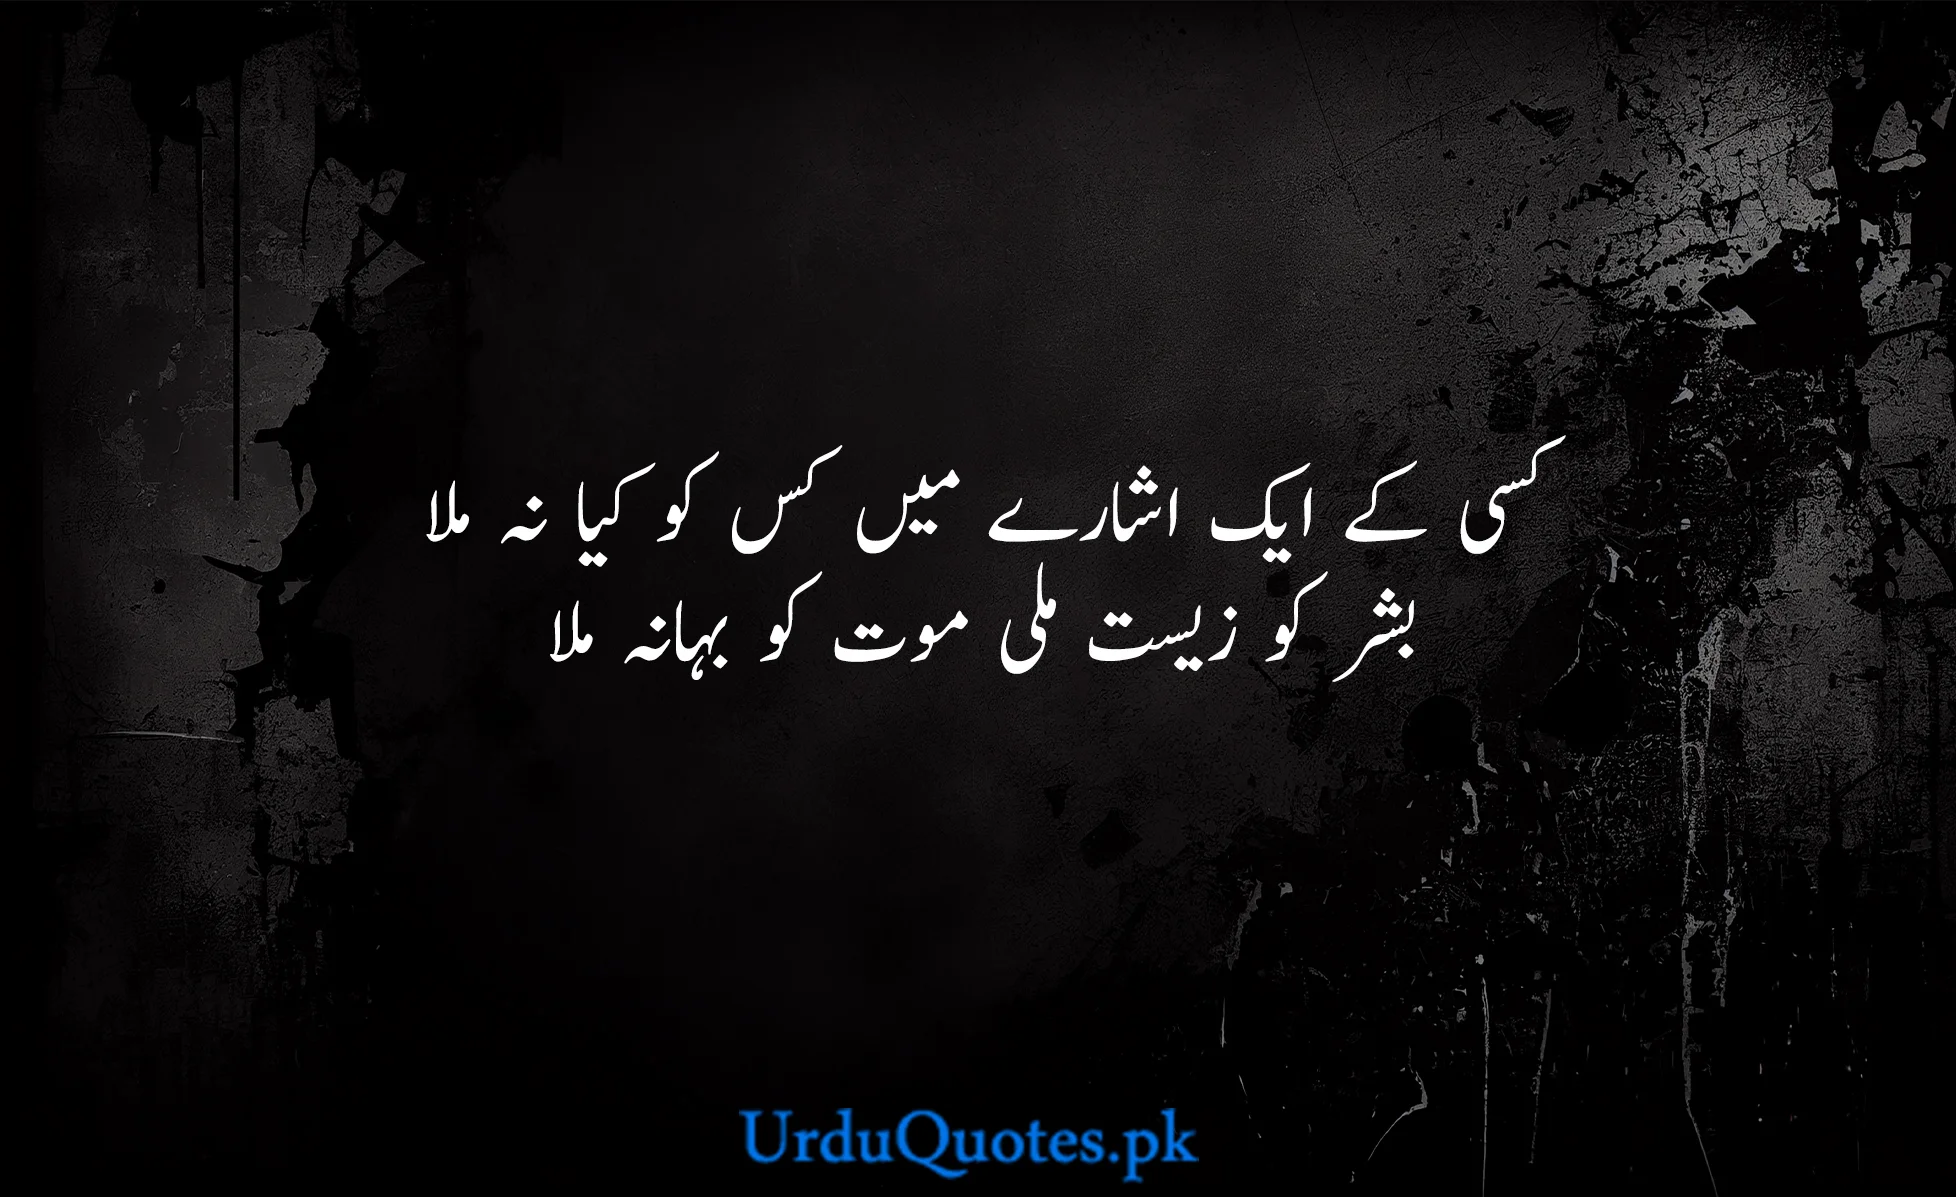 Death-quotes-in-urdu-25